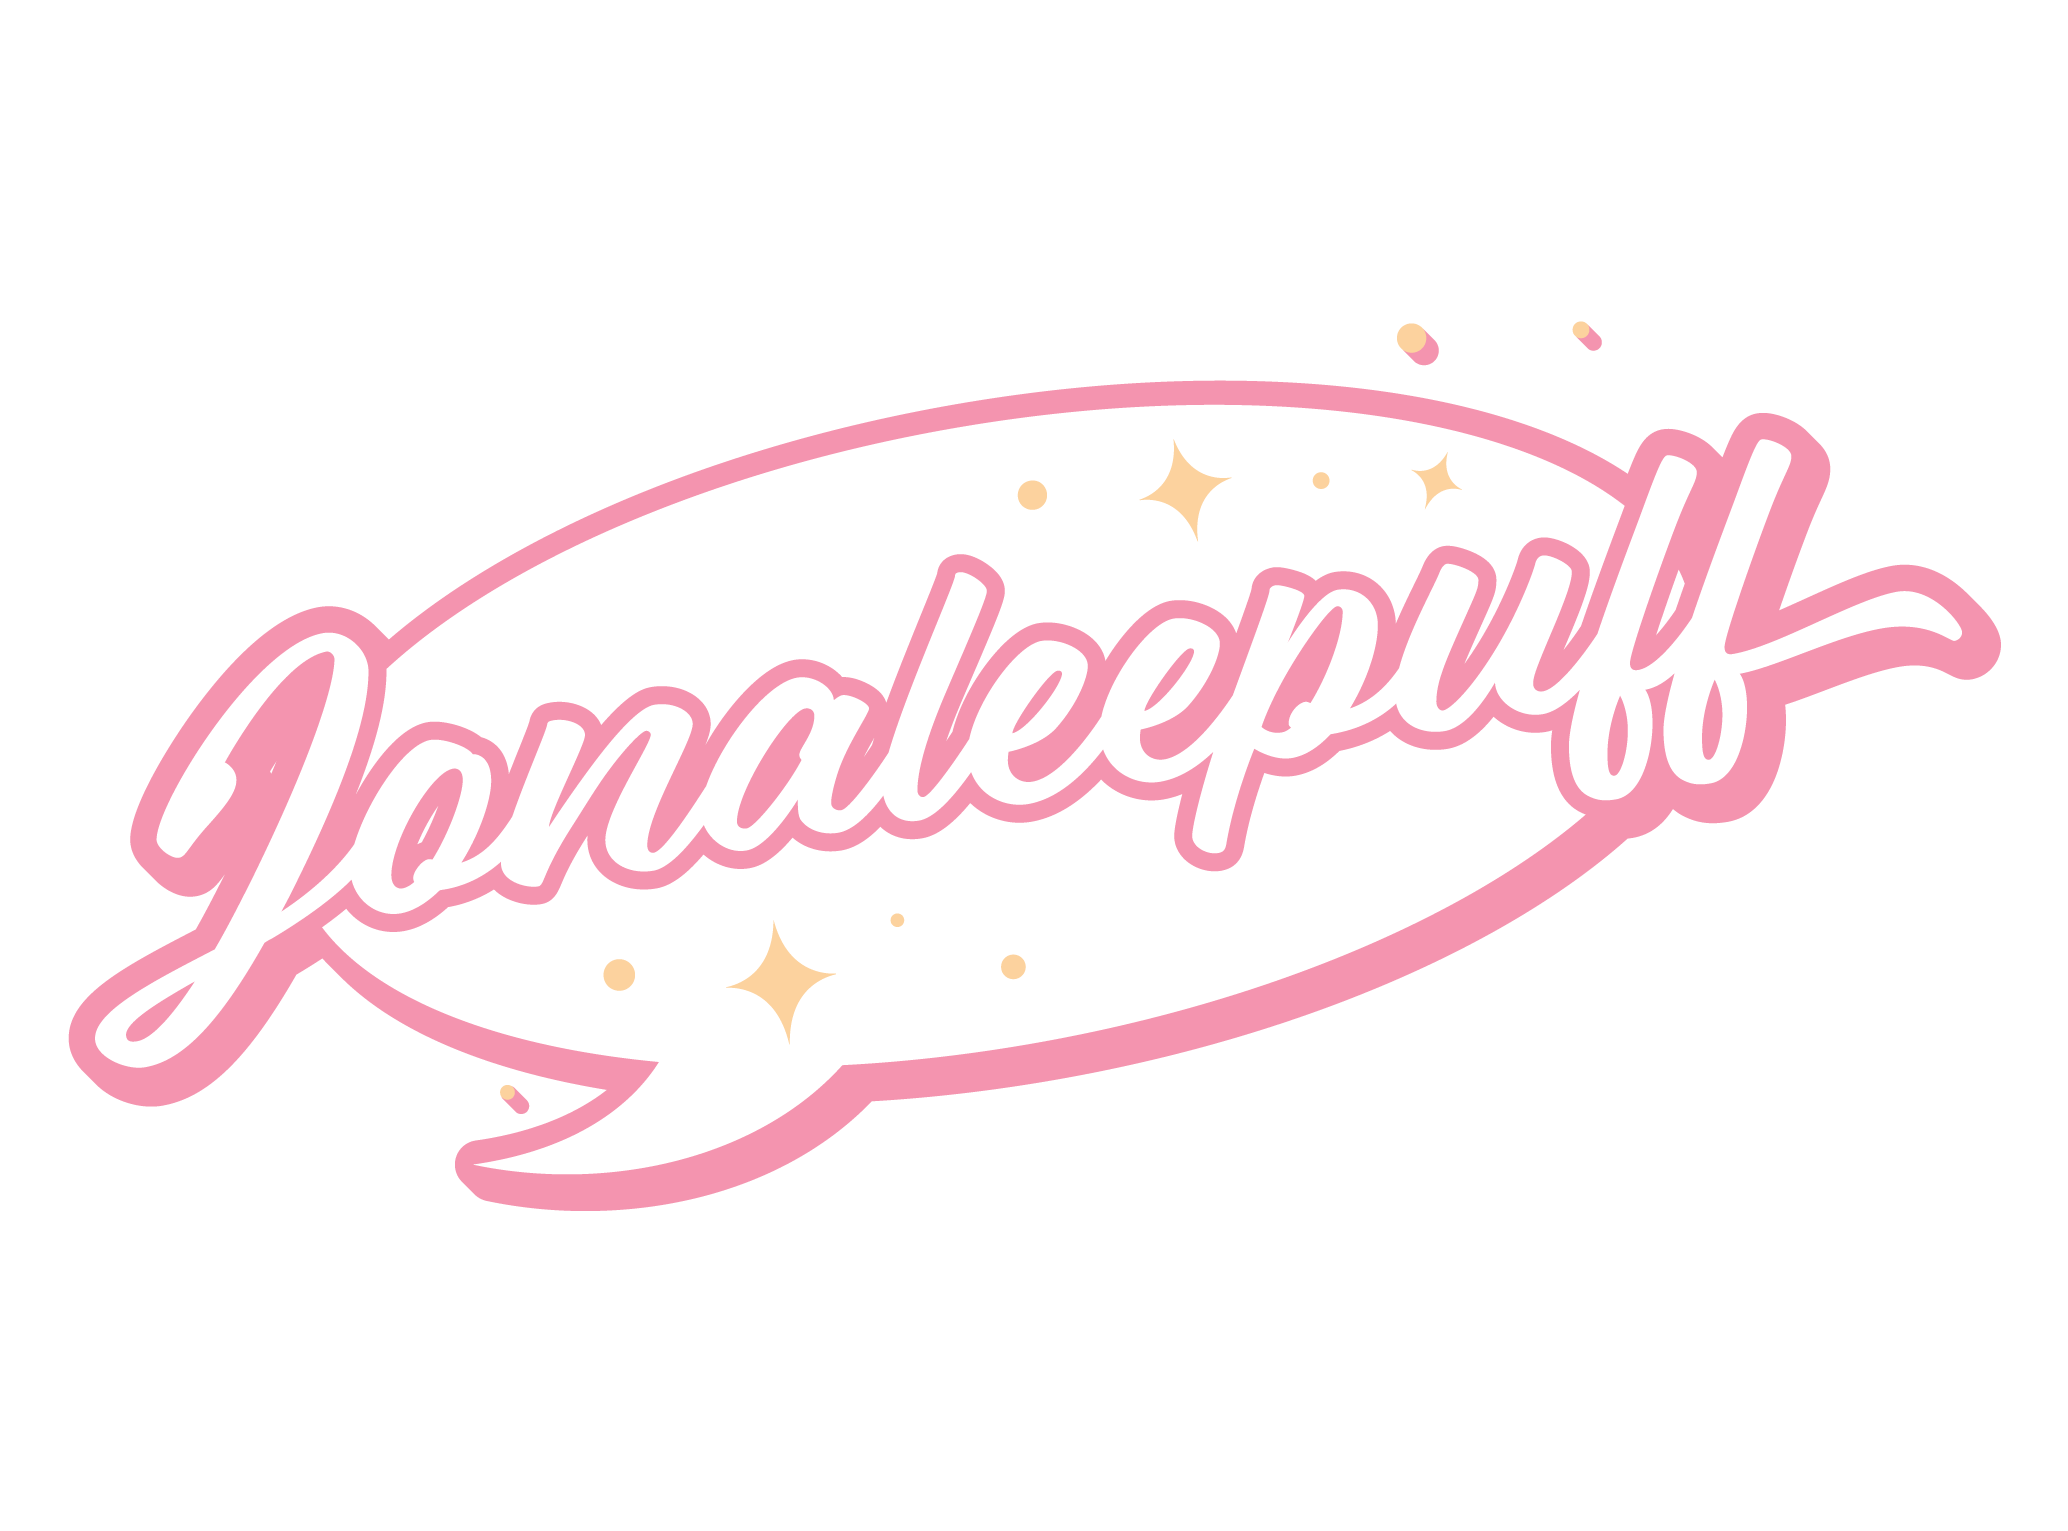 Jonaleepuff